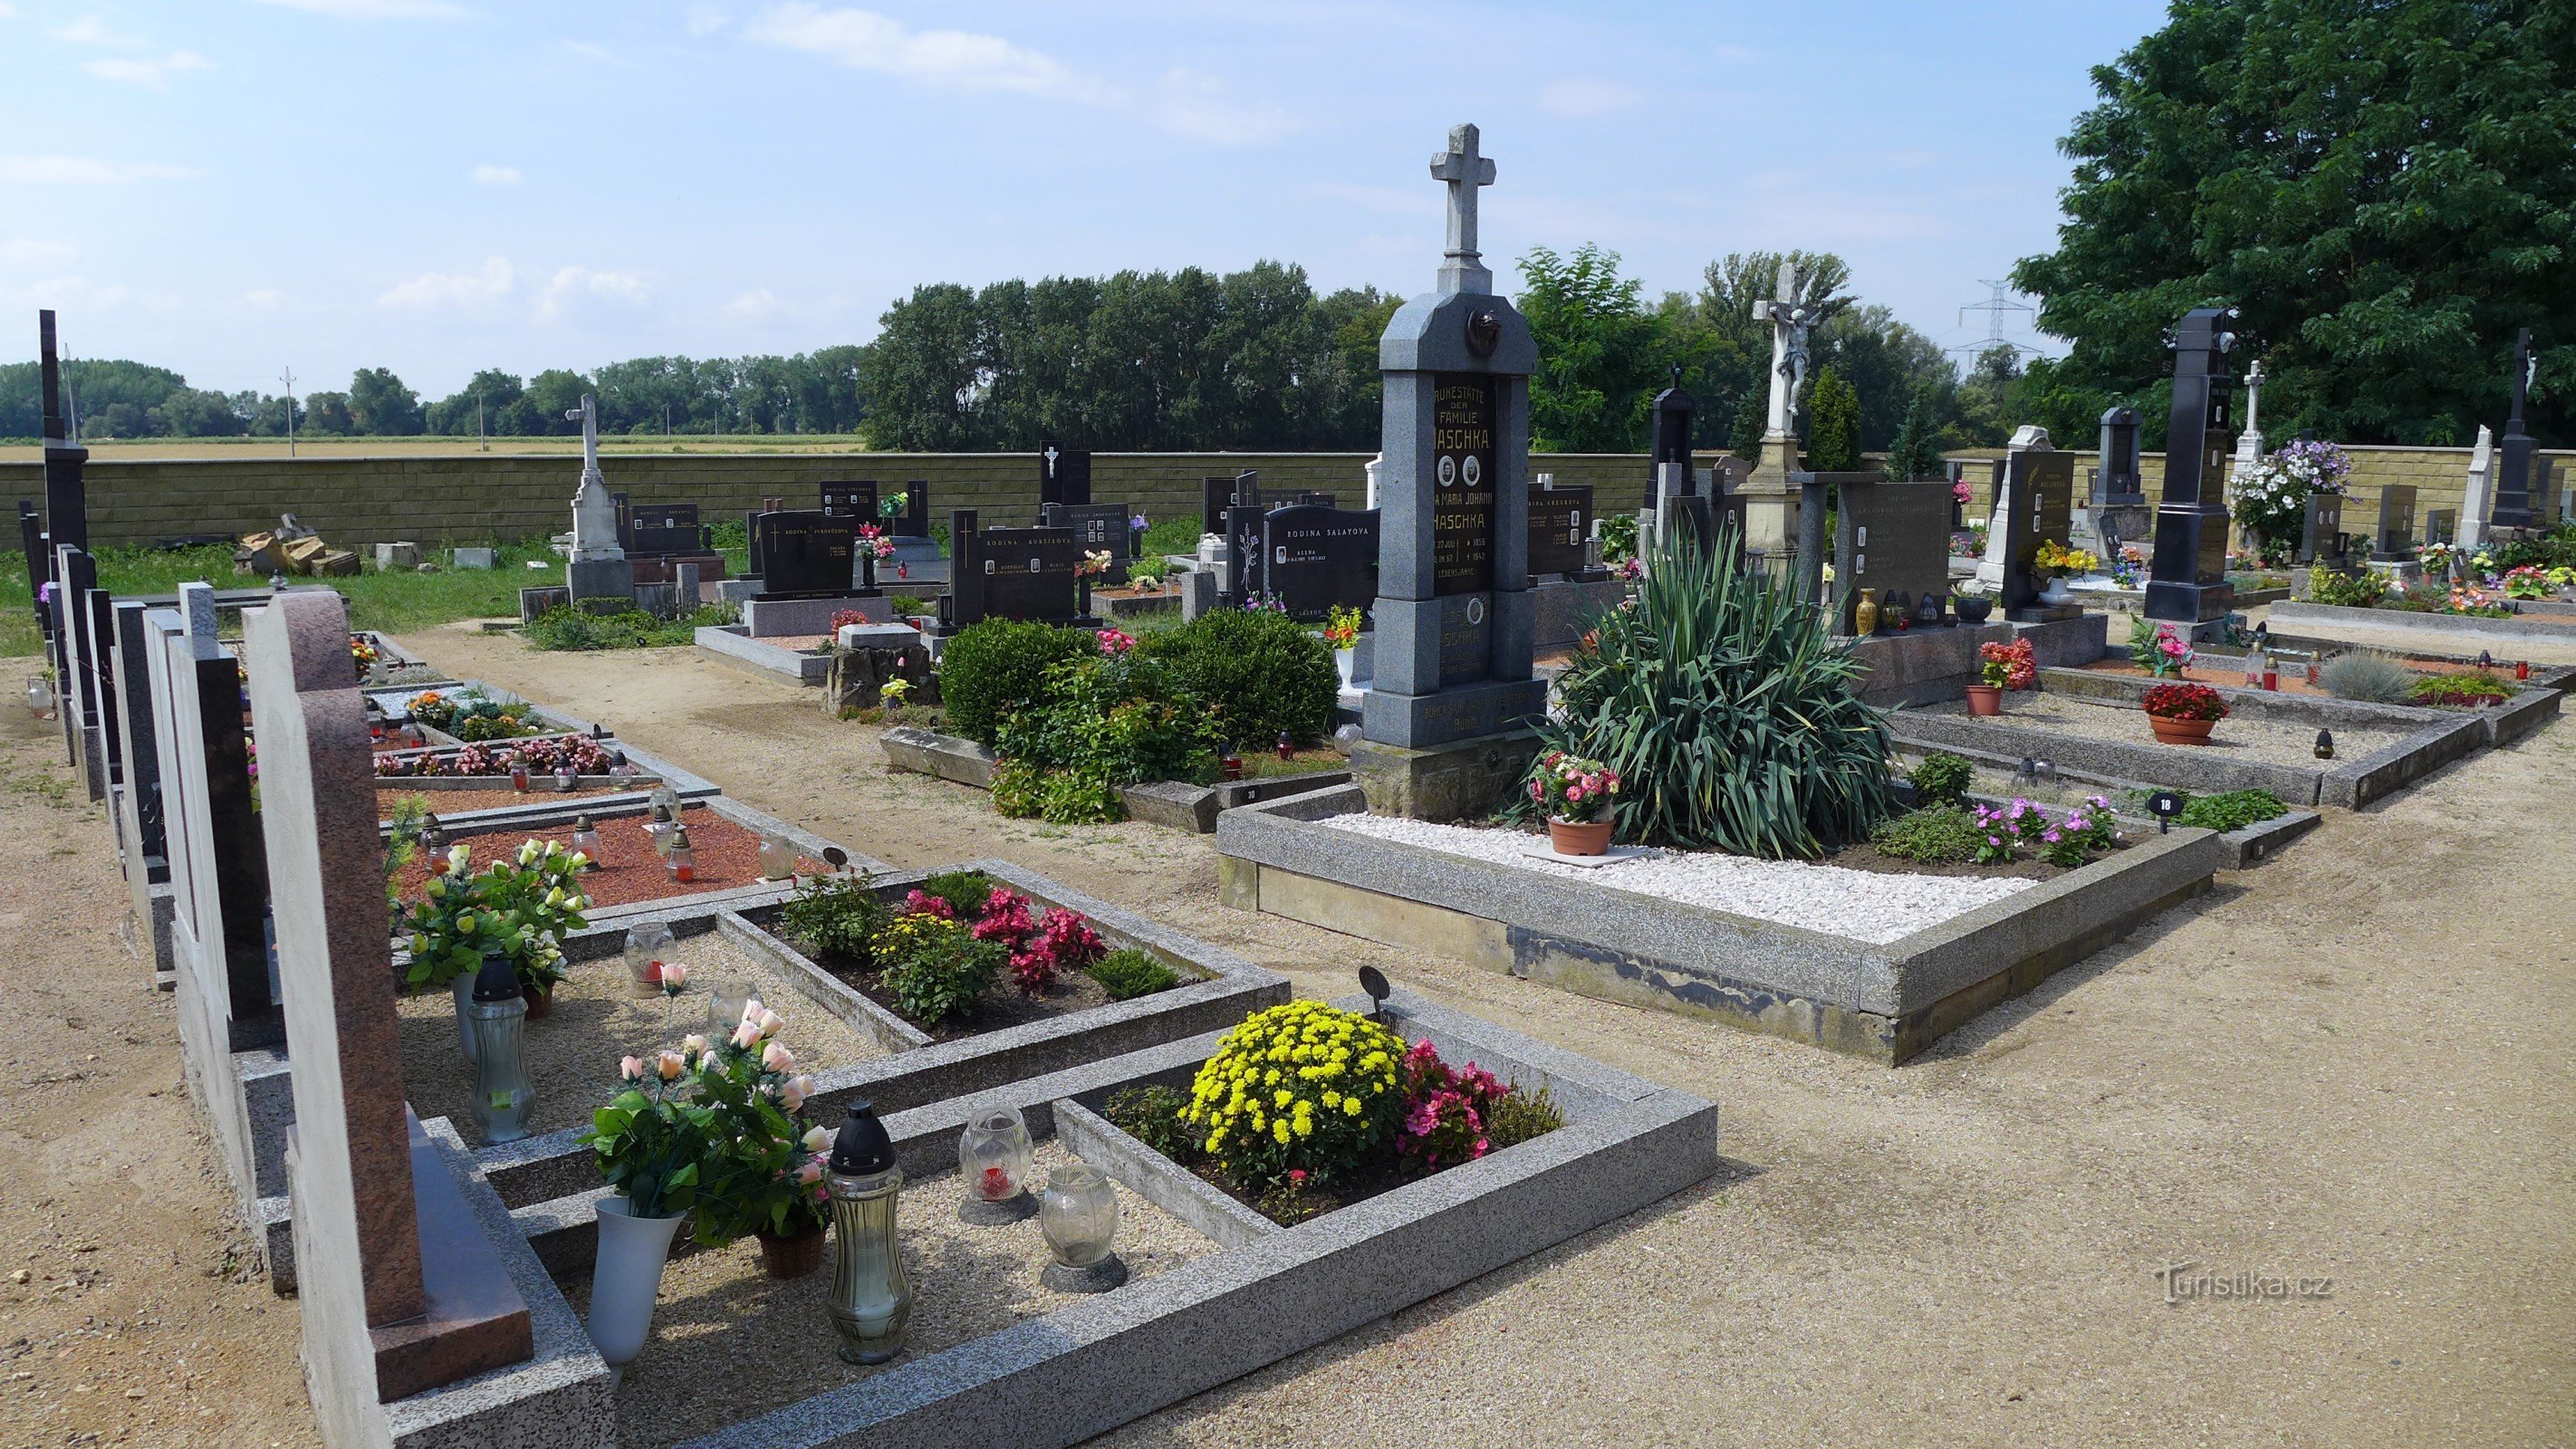 Nemčičky - cemitério